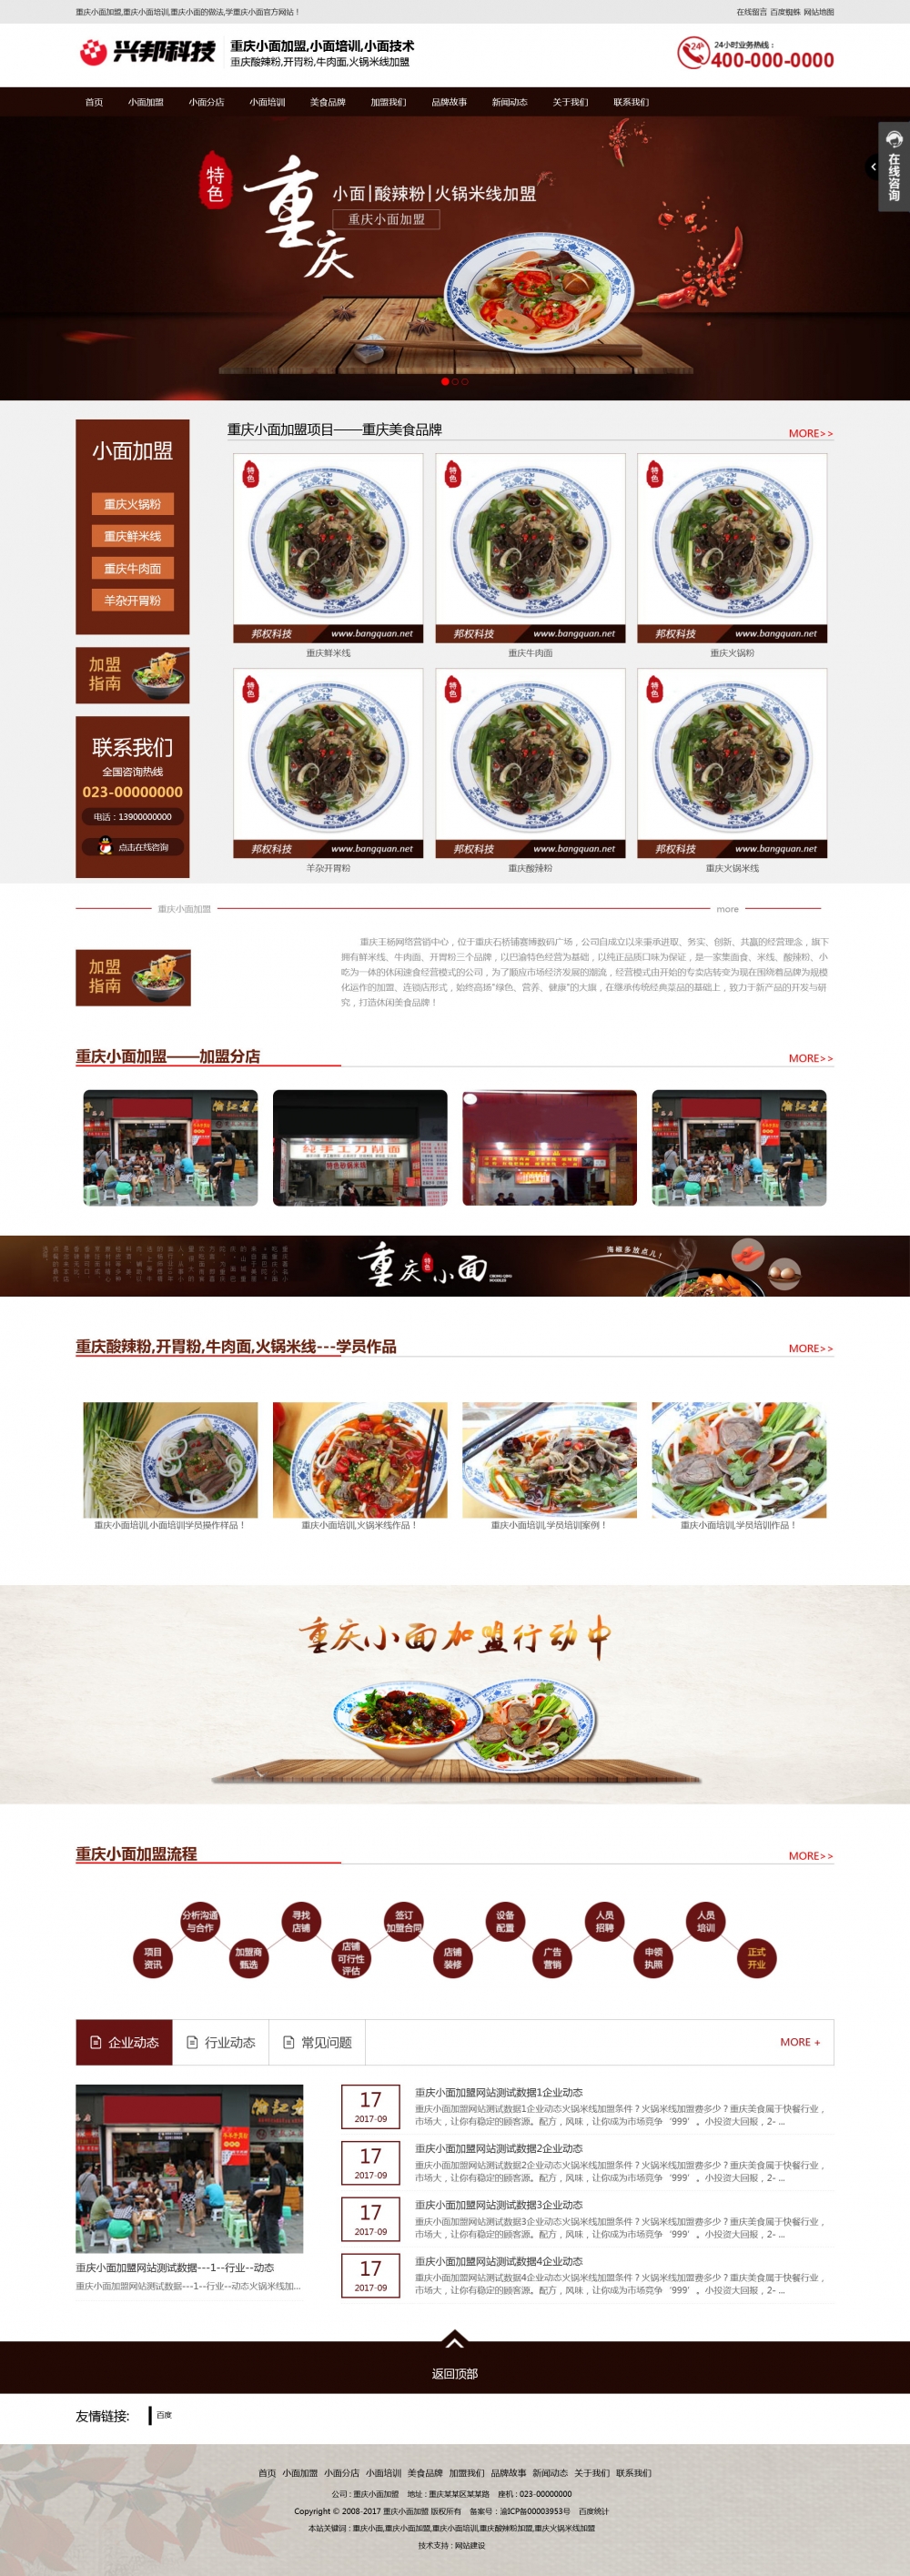 餐饮美食鸳鸯火锅重庆小面地方小吃网站建设营销型企业网站